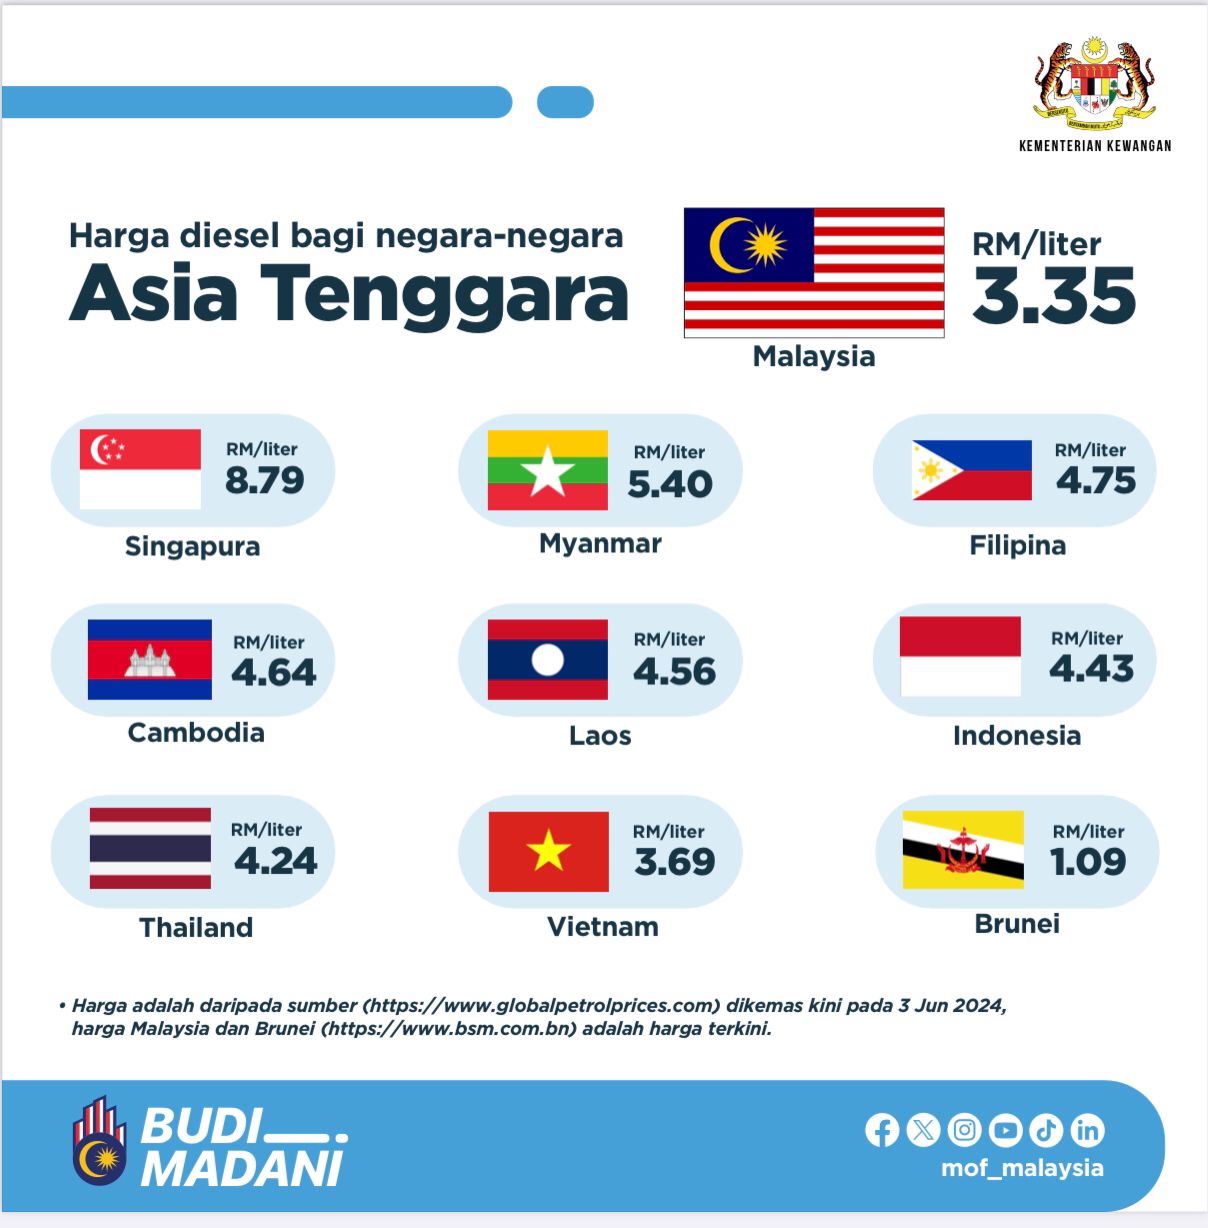 Msia diesel vs ASEAN 2